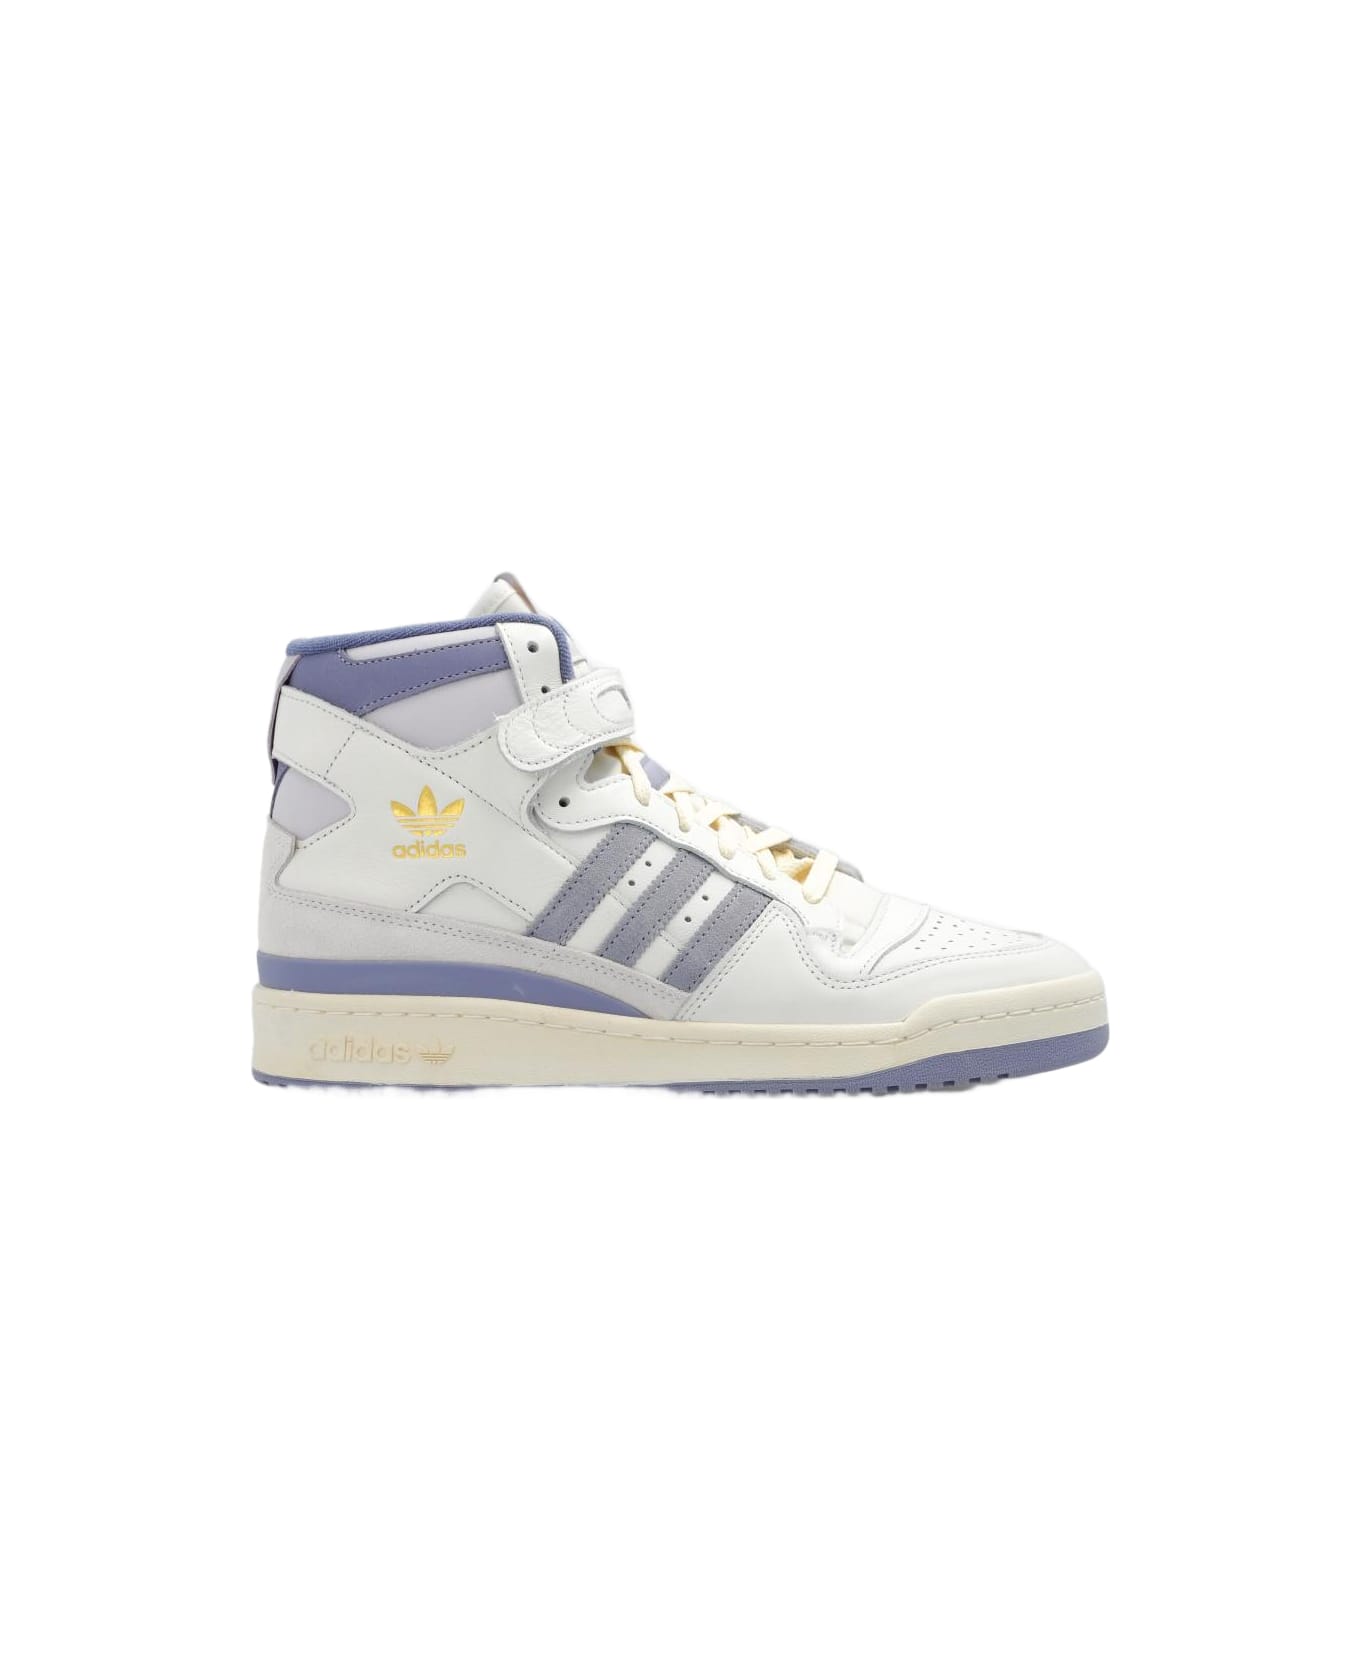 Adidas Originals 'forum 84 Hi' Sneakers - White スニーカー